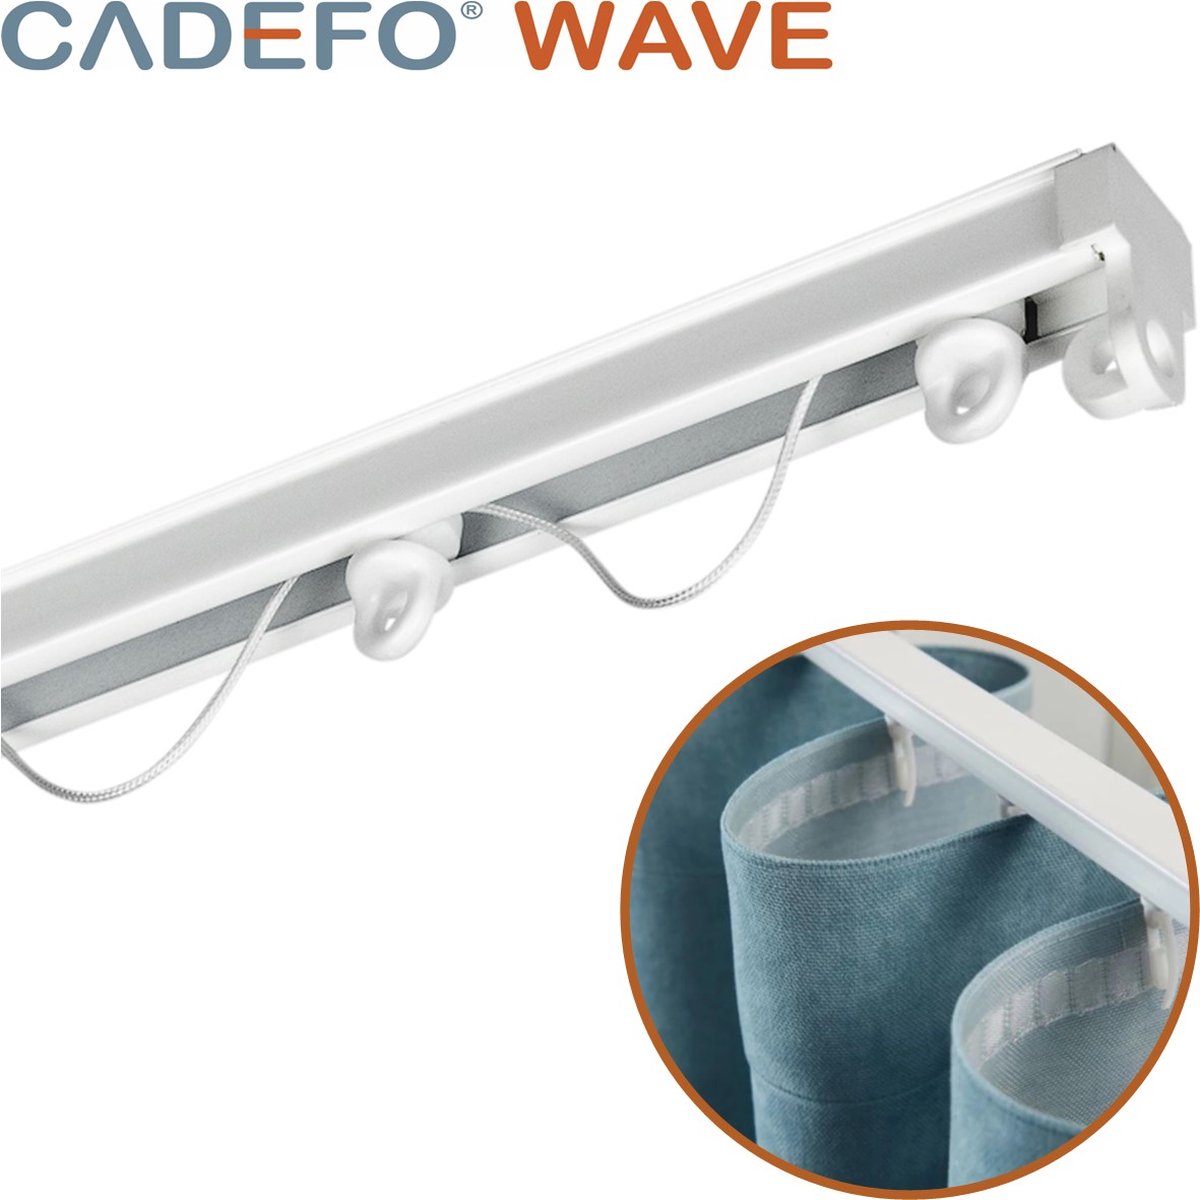 CADEFO WAVE (551 - 600 cm) Gordijnrails - Compleet op maat! - UIT 1 STUK - Leverbaar tot 6 meter - Plafondbevestiging - Lengte 583 cm